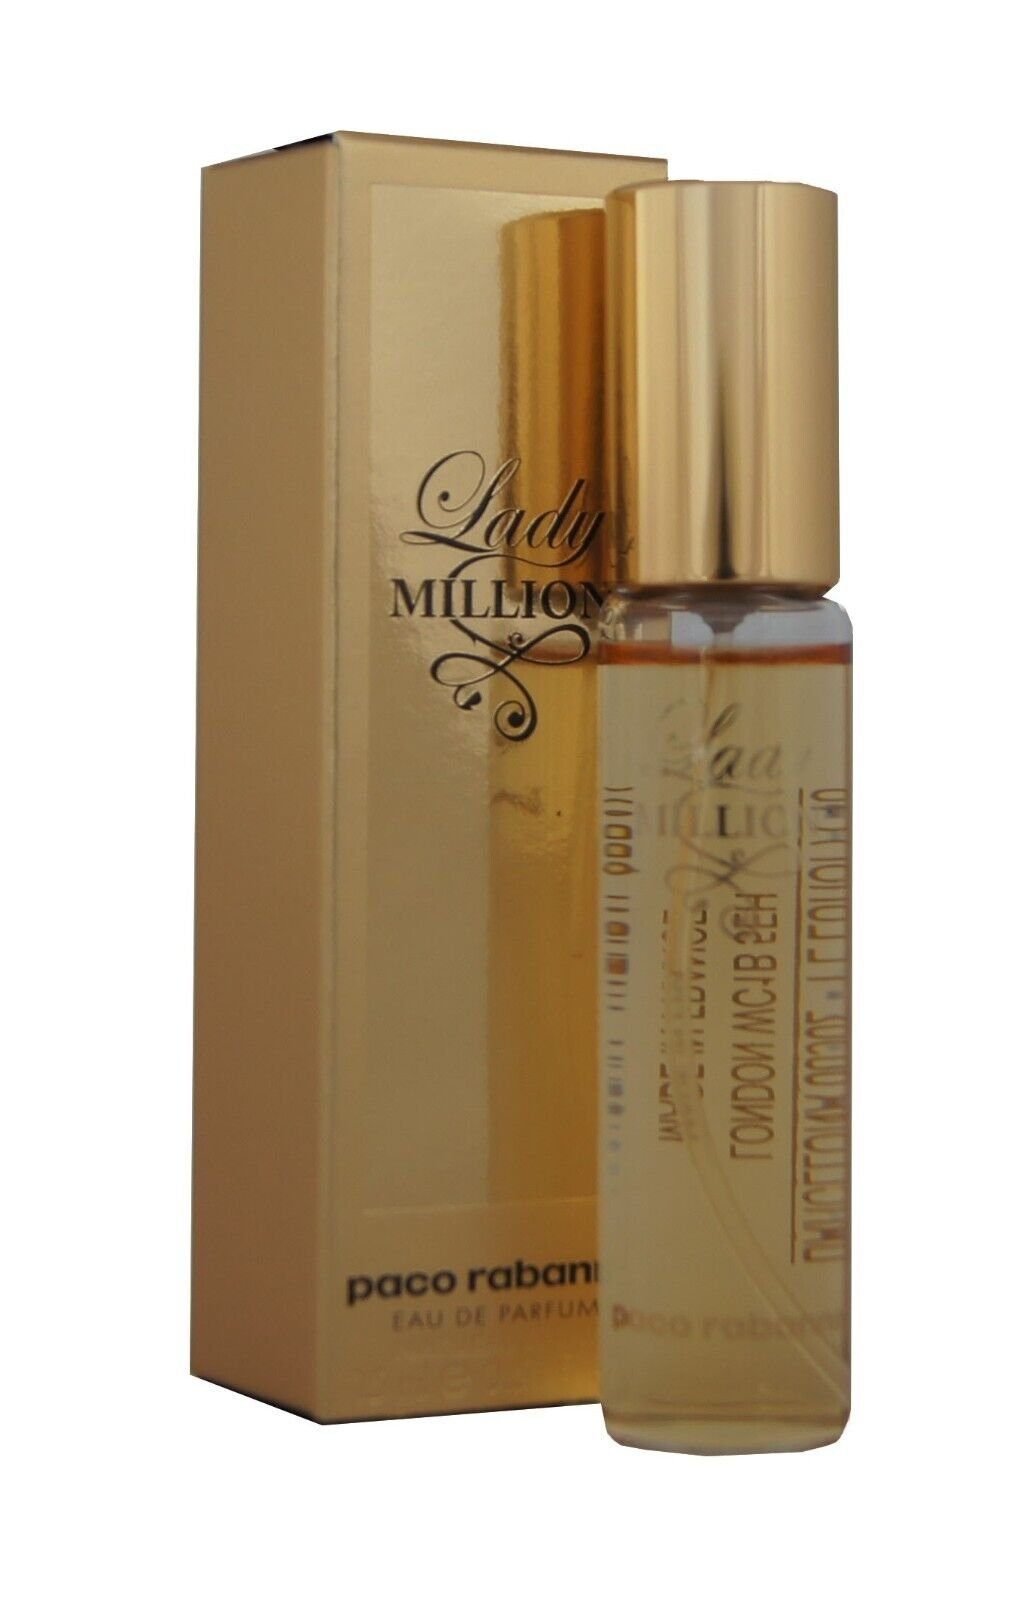 paco rabanne Eau de Parfum de Lady Million 15ml. Paco Eau Rabanne edp Parfum